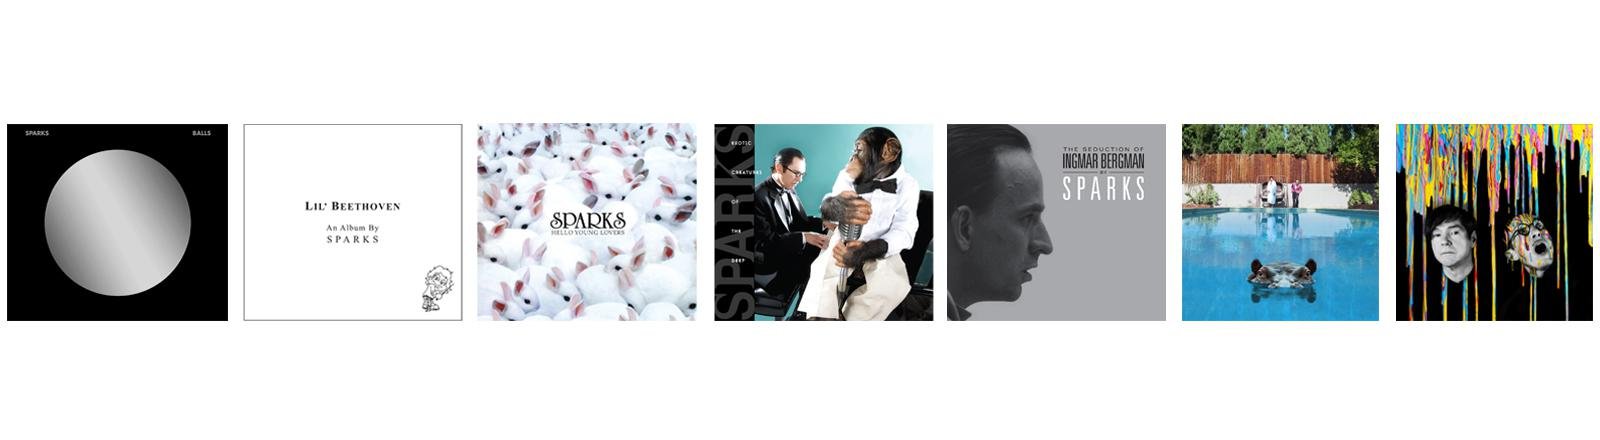 Sparks: 21st Century è la raccolta con 7 album in studio che celebra la band